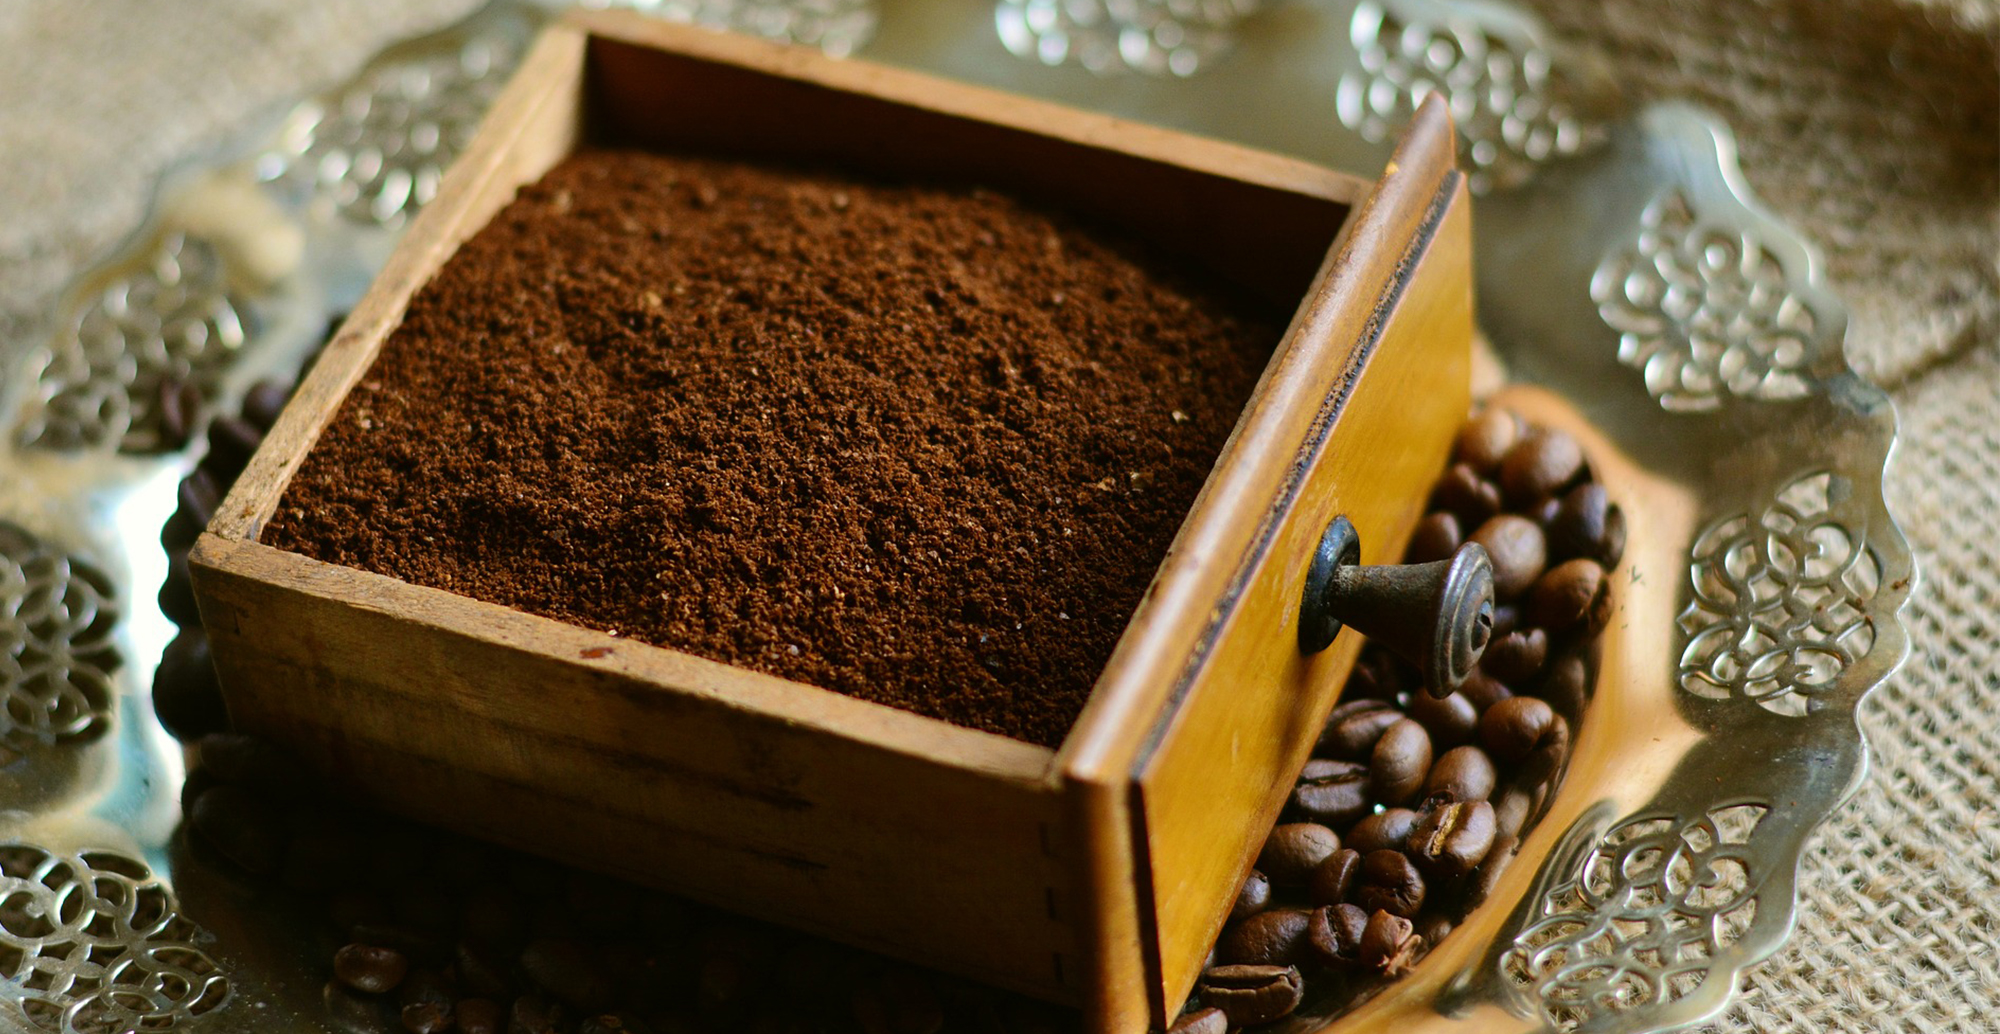 Kaffeesatz macht schön: Pflegeprodukte aus Kaffeesatz.